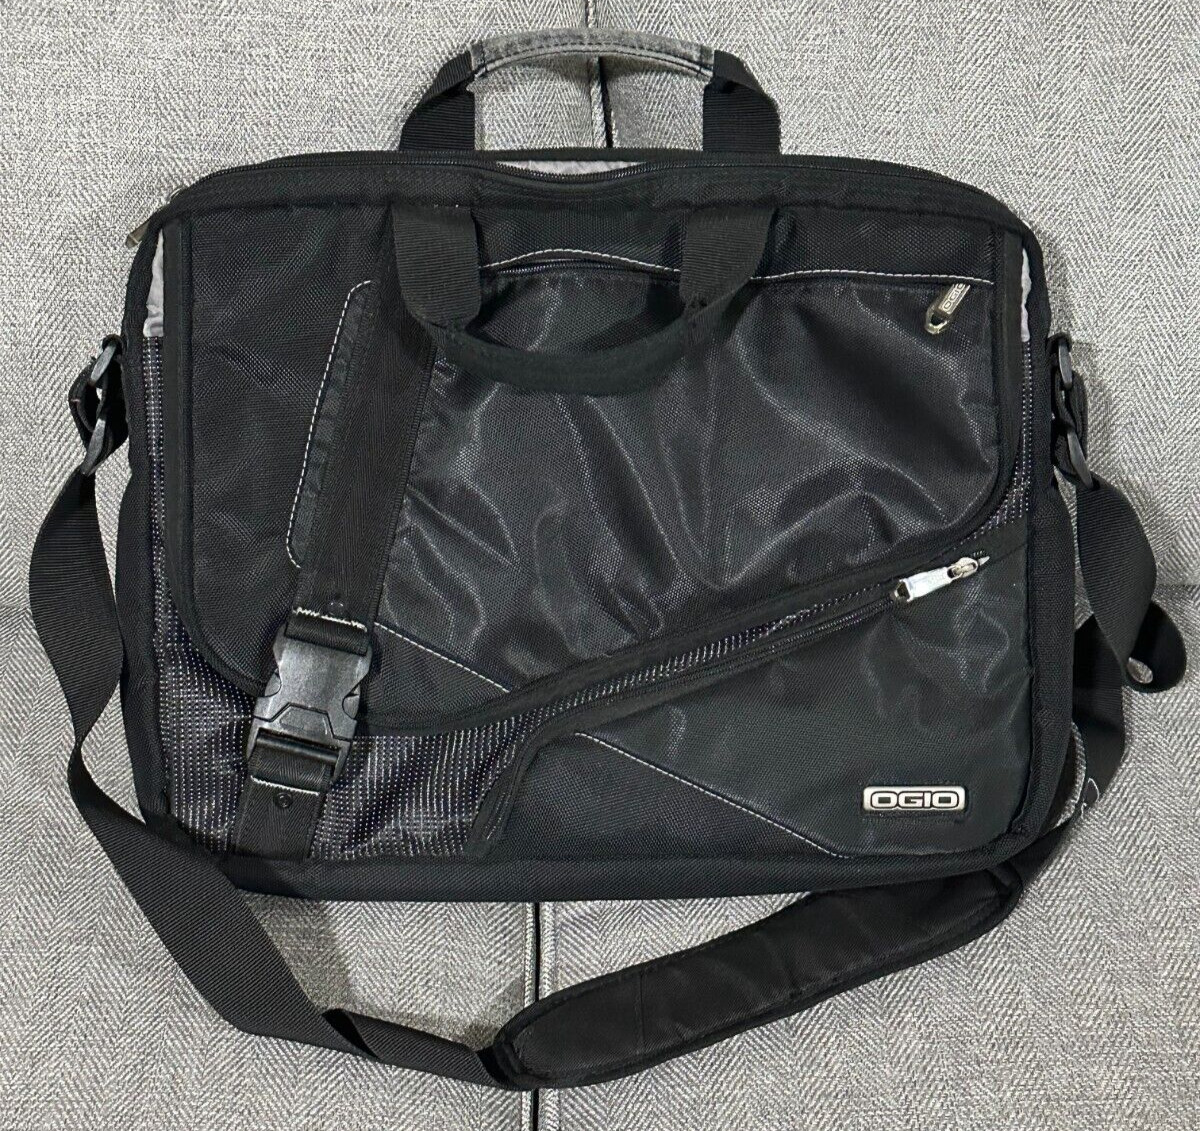 OGIO Voyager Padded Messenger Bag Briefcase For Laptop Computer